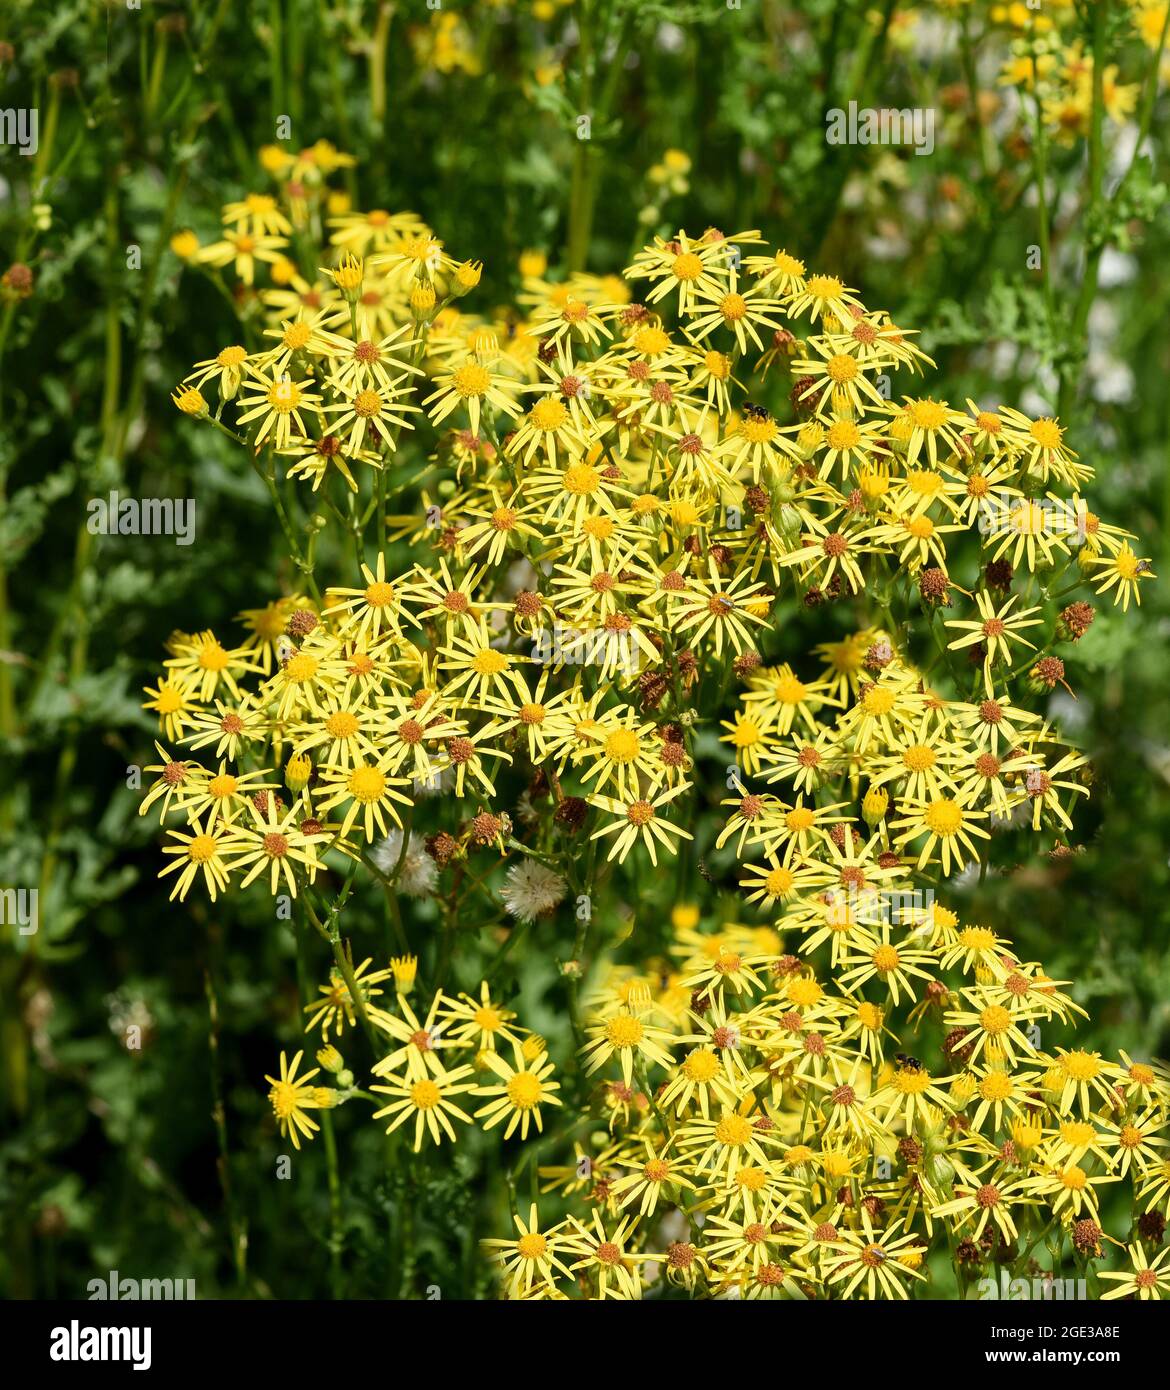 Jakobs-Kreuzkraut, Senecio jacobeae, ist ein Unkraut und eine Giftpflanze  und sehr giftig vor allem fuer Weidetiere. Jacobs ragwort, Senecio jacobeae  Stock Photo - Alamy